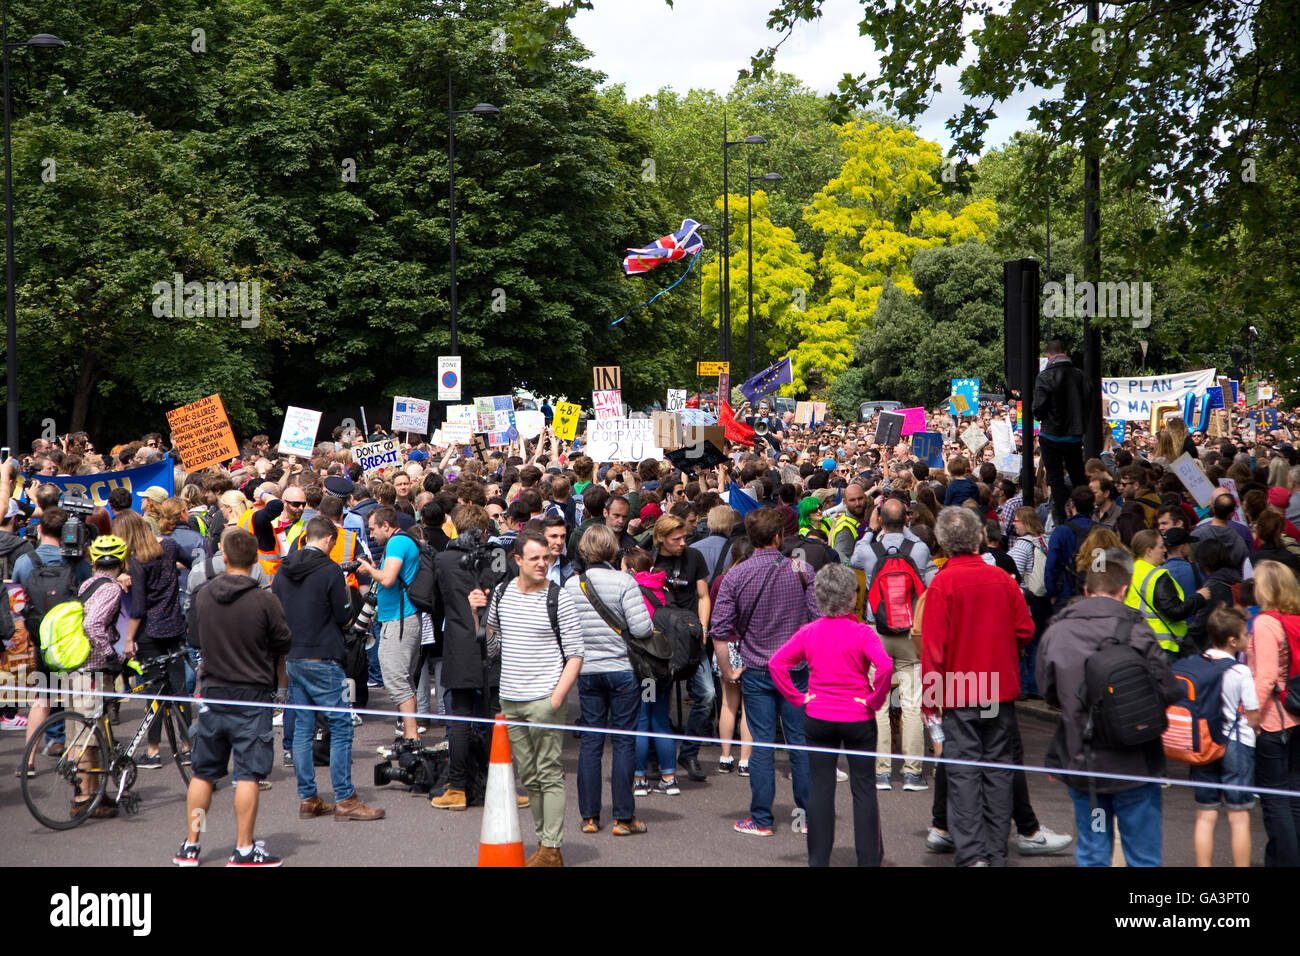 Londres - 02 de julio: los manifestantes en la marcha de protesta en Europa Julio 2nd, 2016 en Londres, Inglaterra, Reino Unido. Se estima que 35 tú Foto de stock